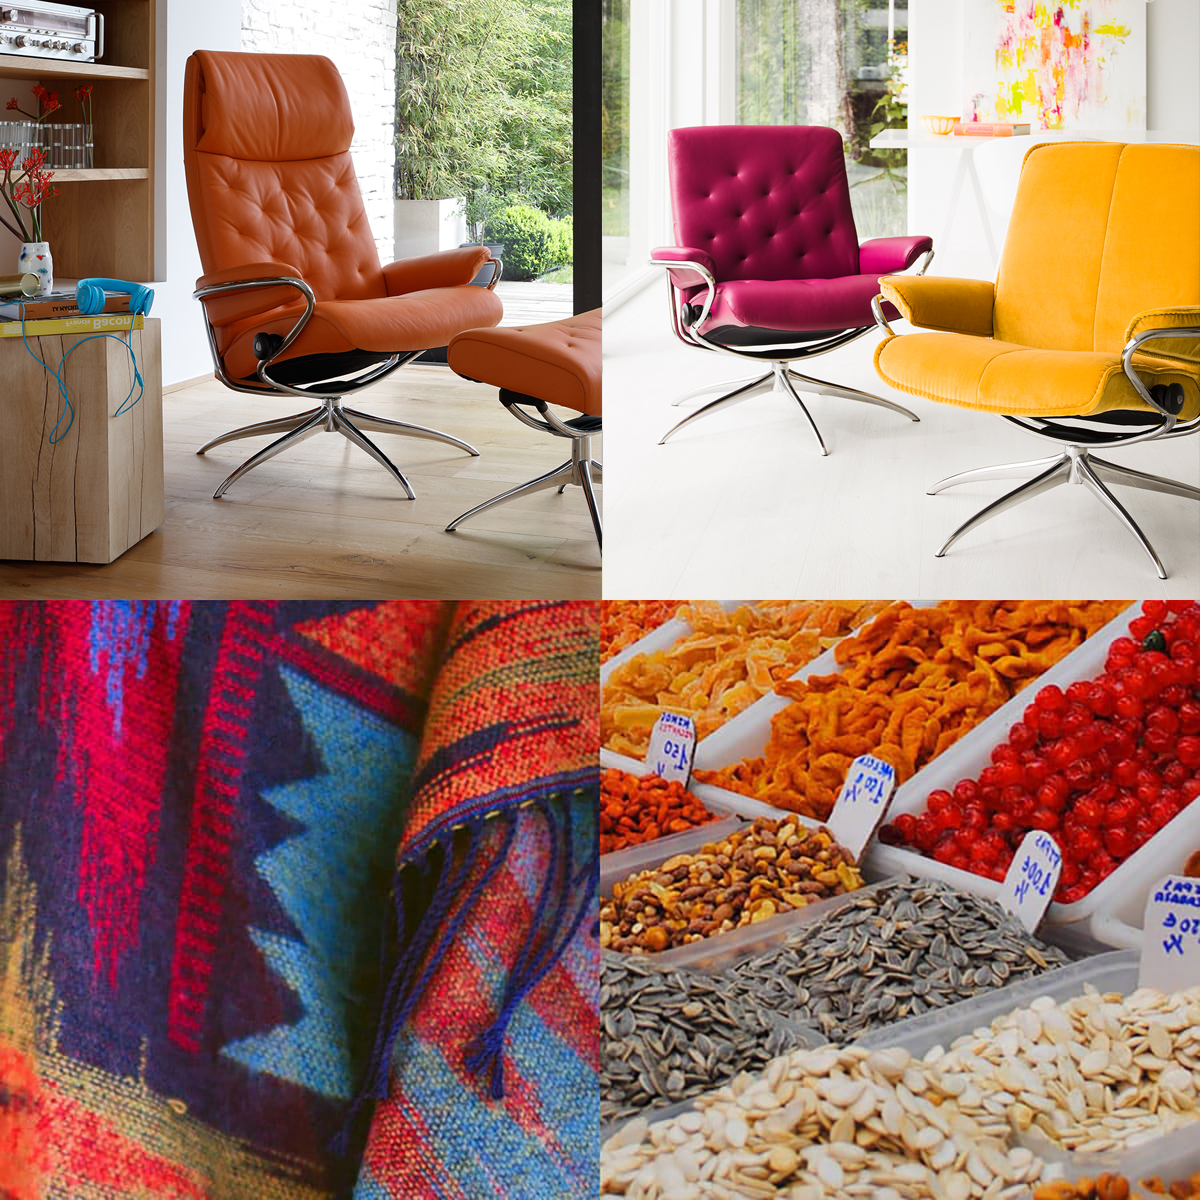 Mit kräftigen Farbkombinationen bringt ihr im Sommer Exotik und Energie in euer Zuhause.